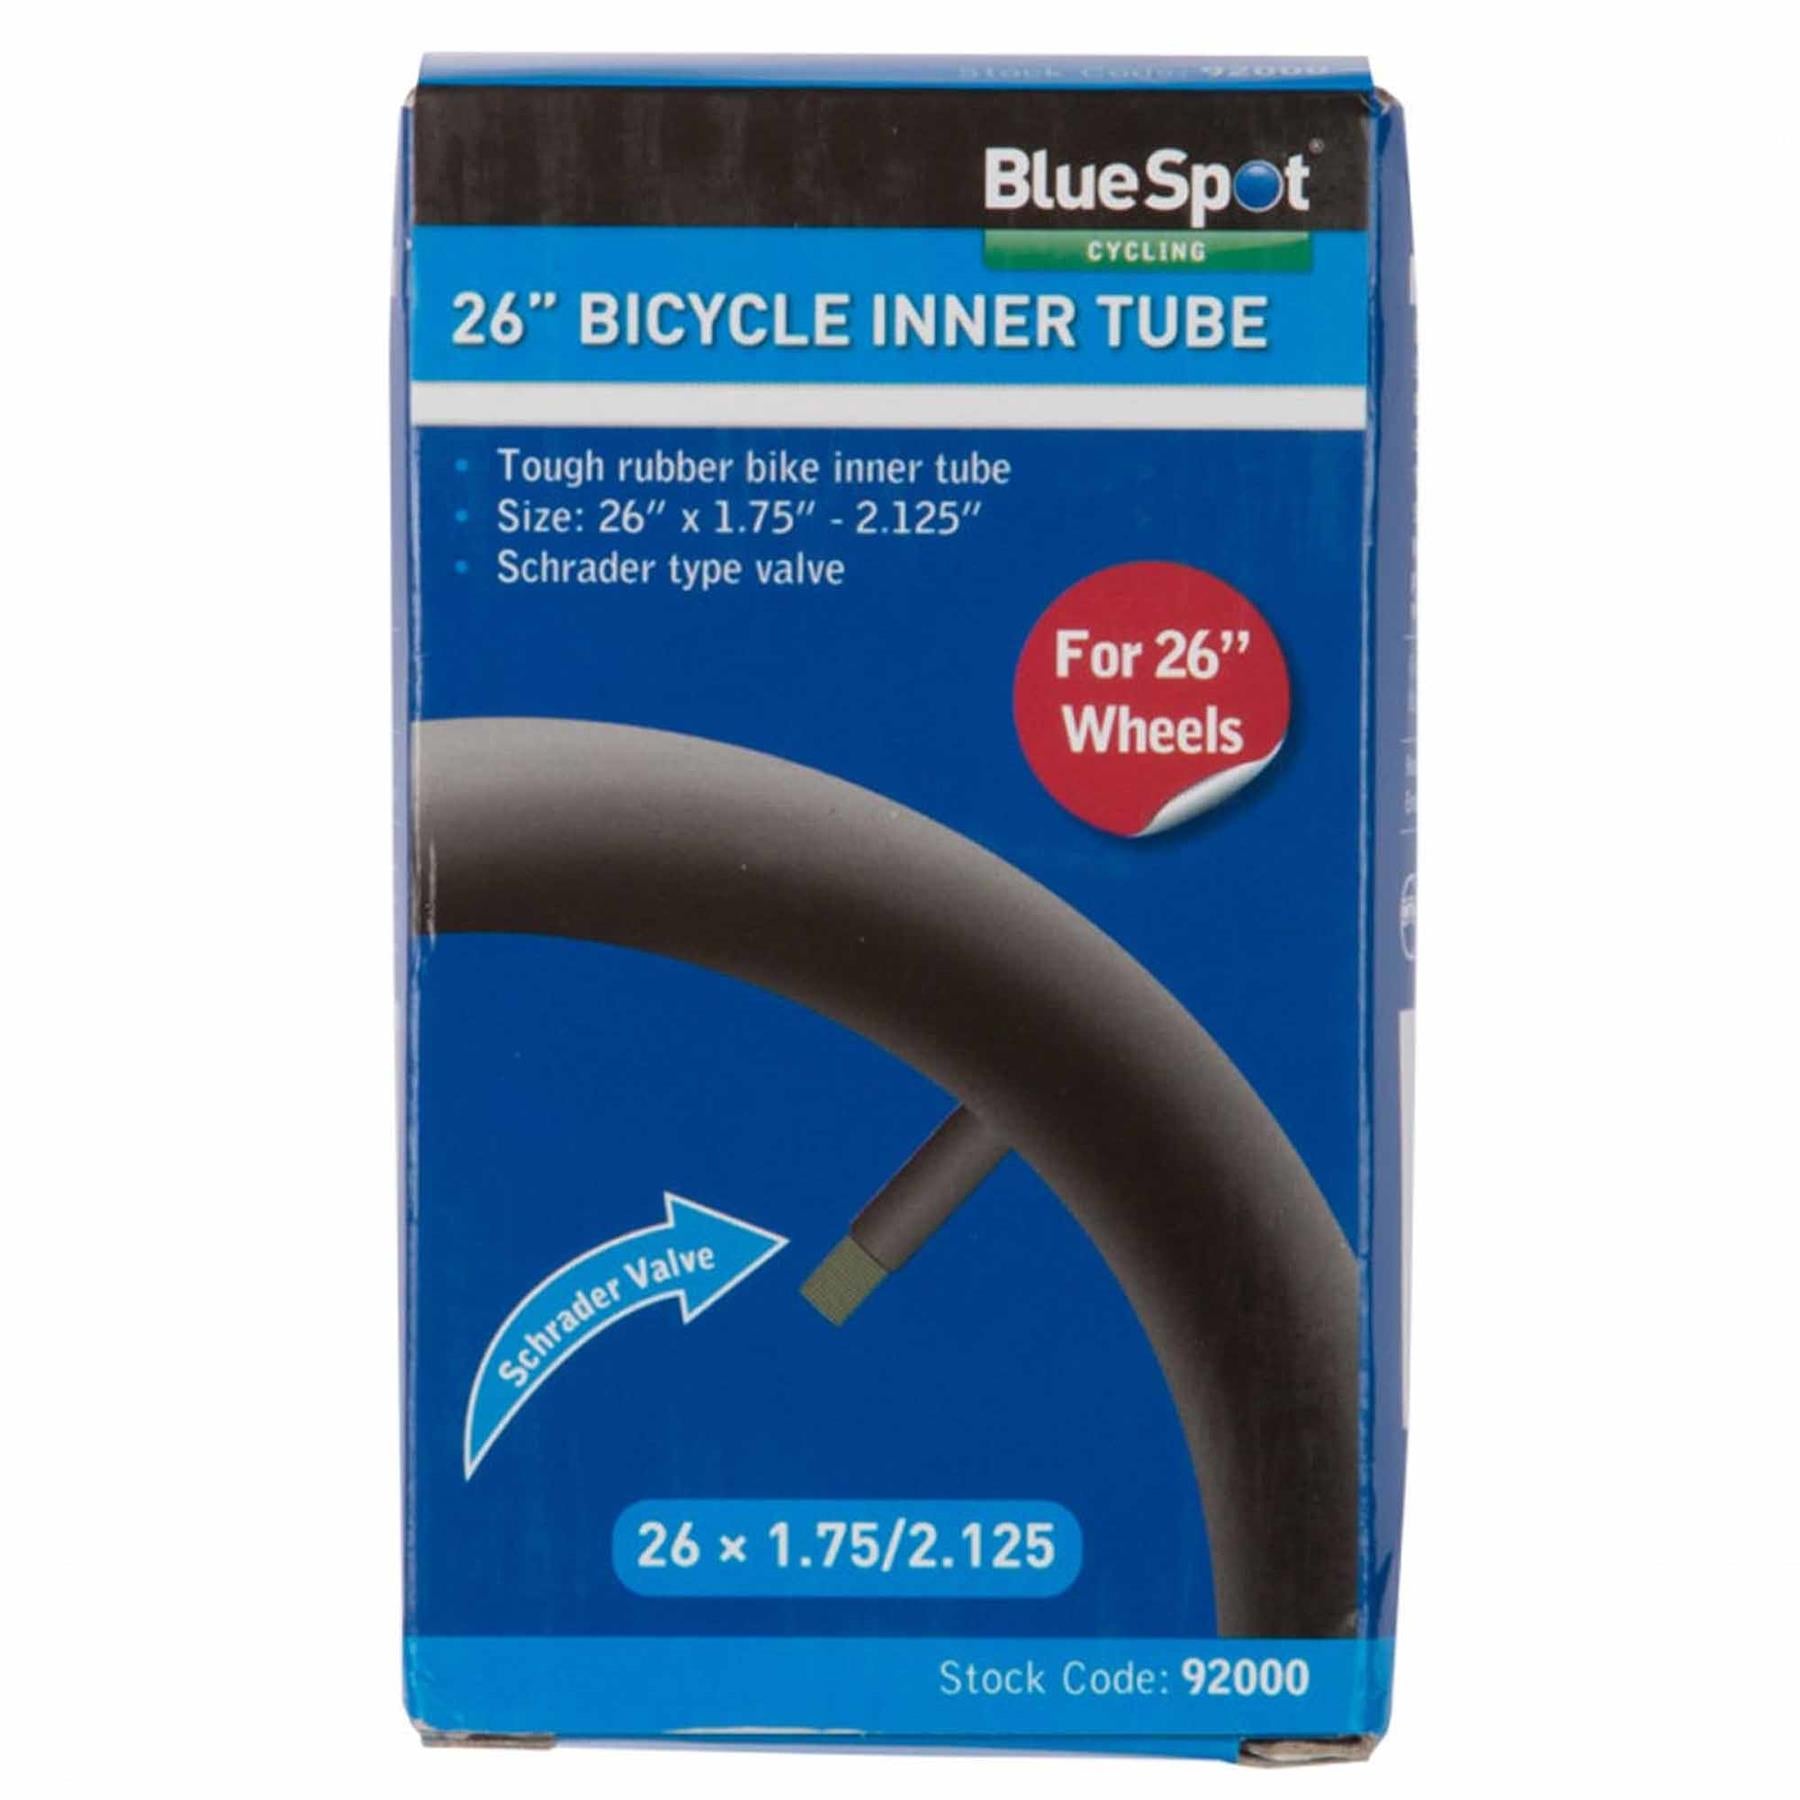 BlueSpot 26" Bike Tyre Inner Tube Bicycle Car Shrader Valve Tubes 1.75" - 2.125"